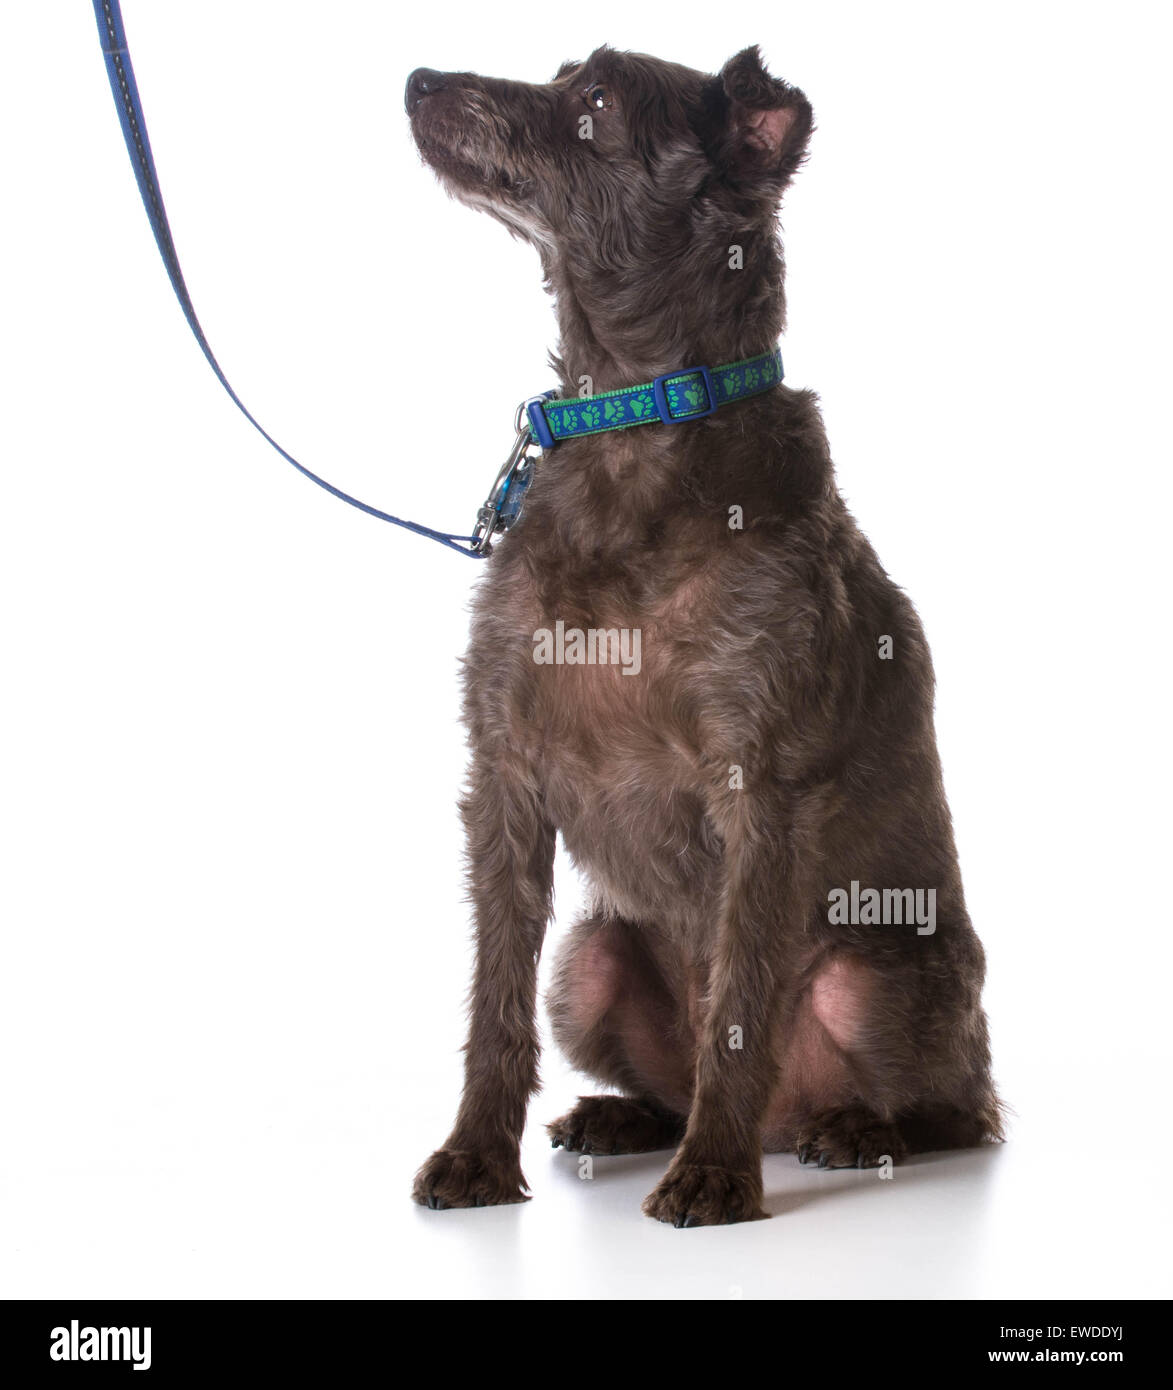 Hund an der Leine - Mischling Hund trägt, Leine und Halsband Stockfoto